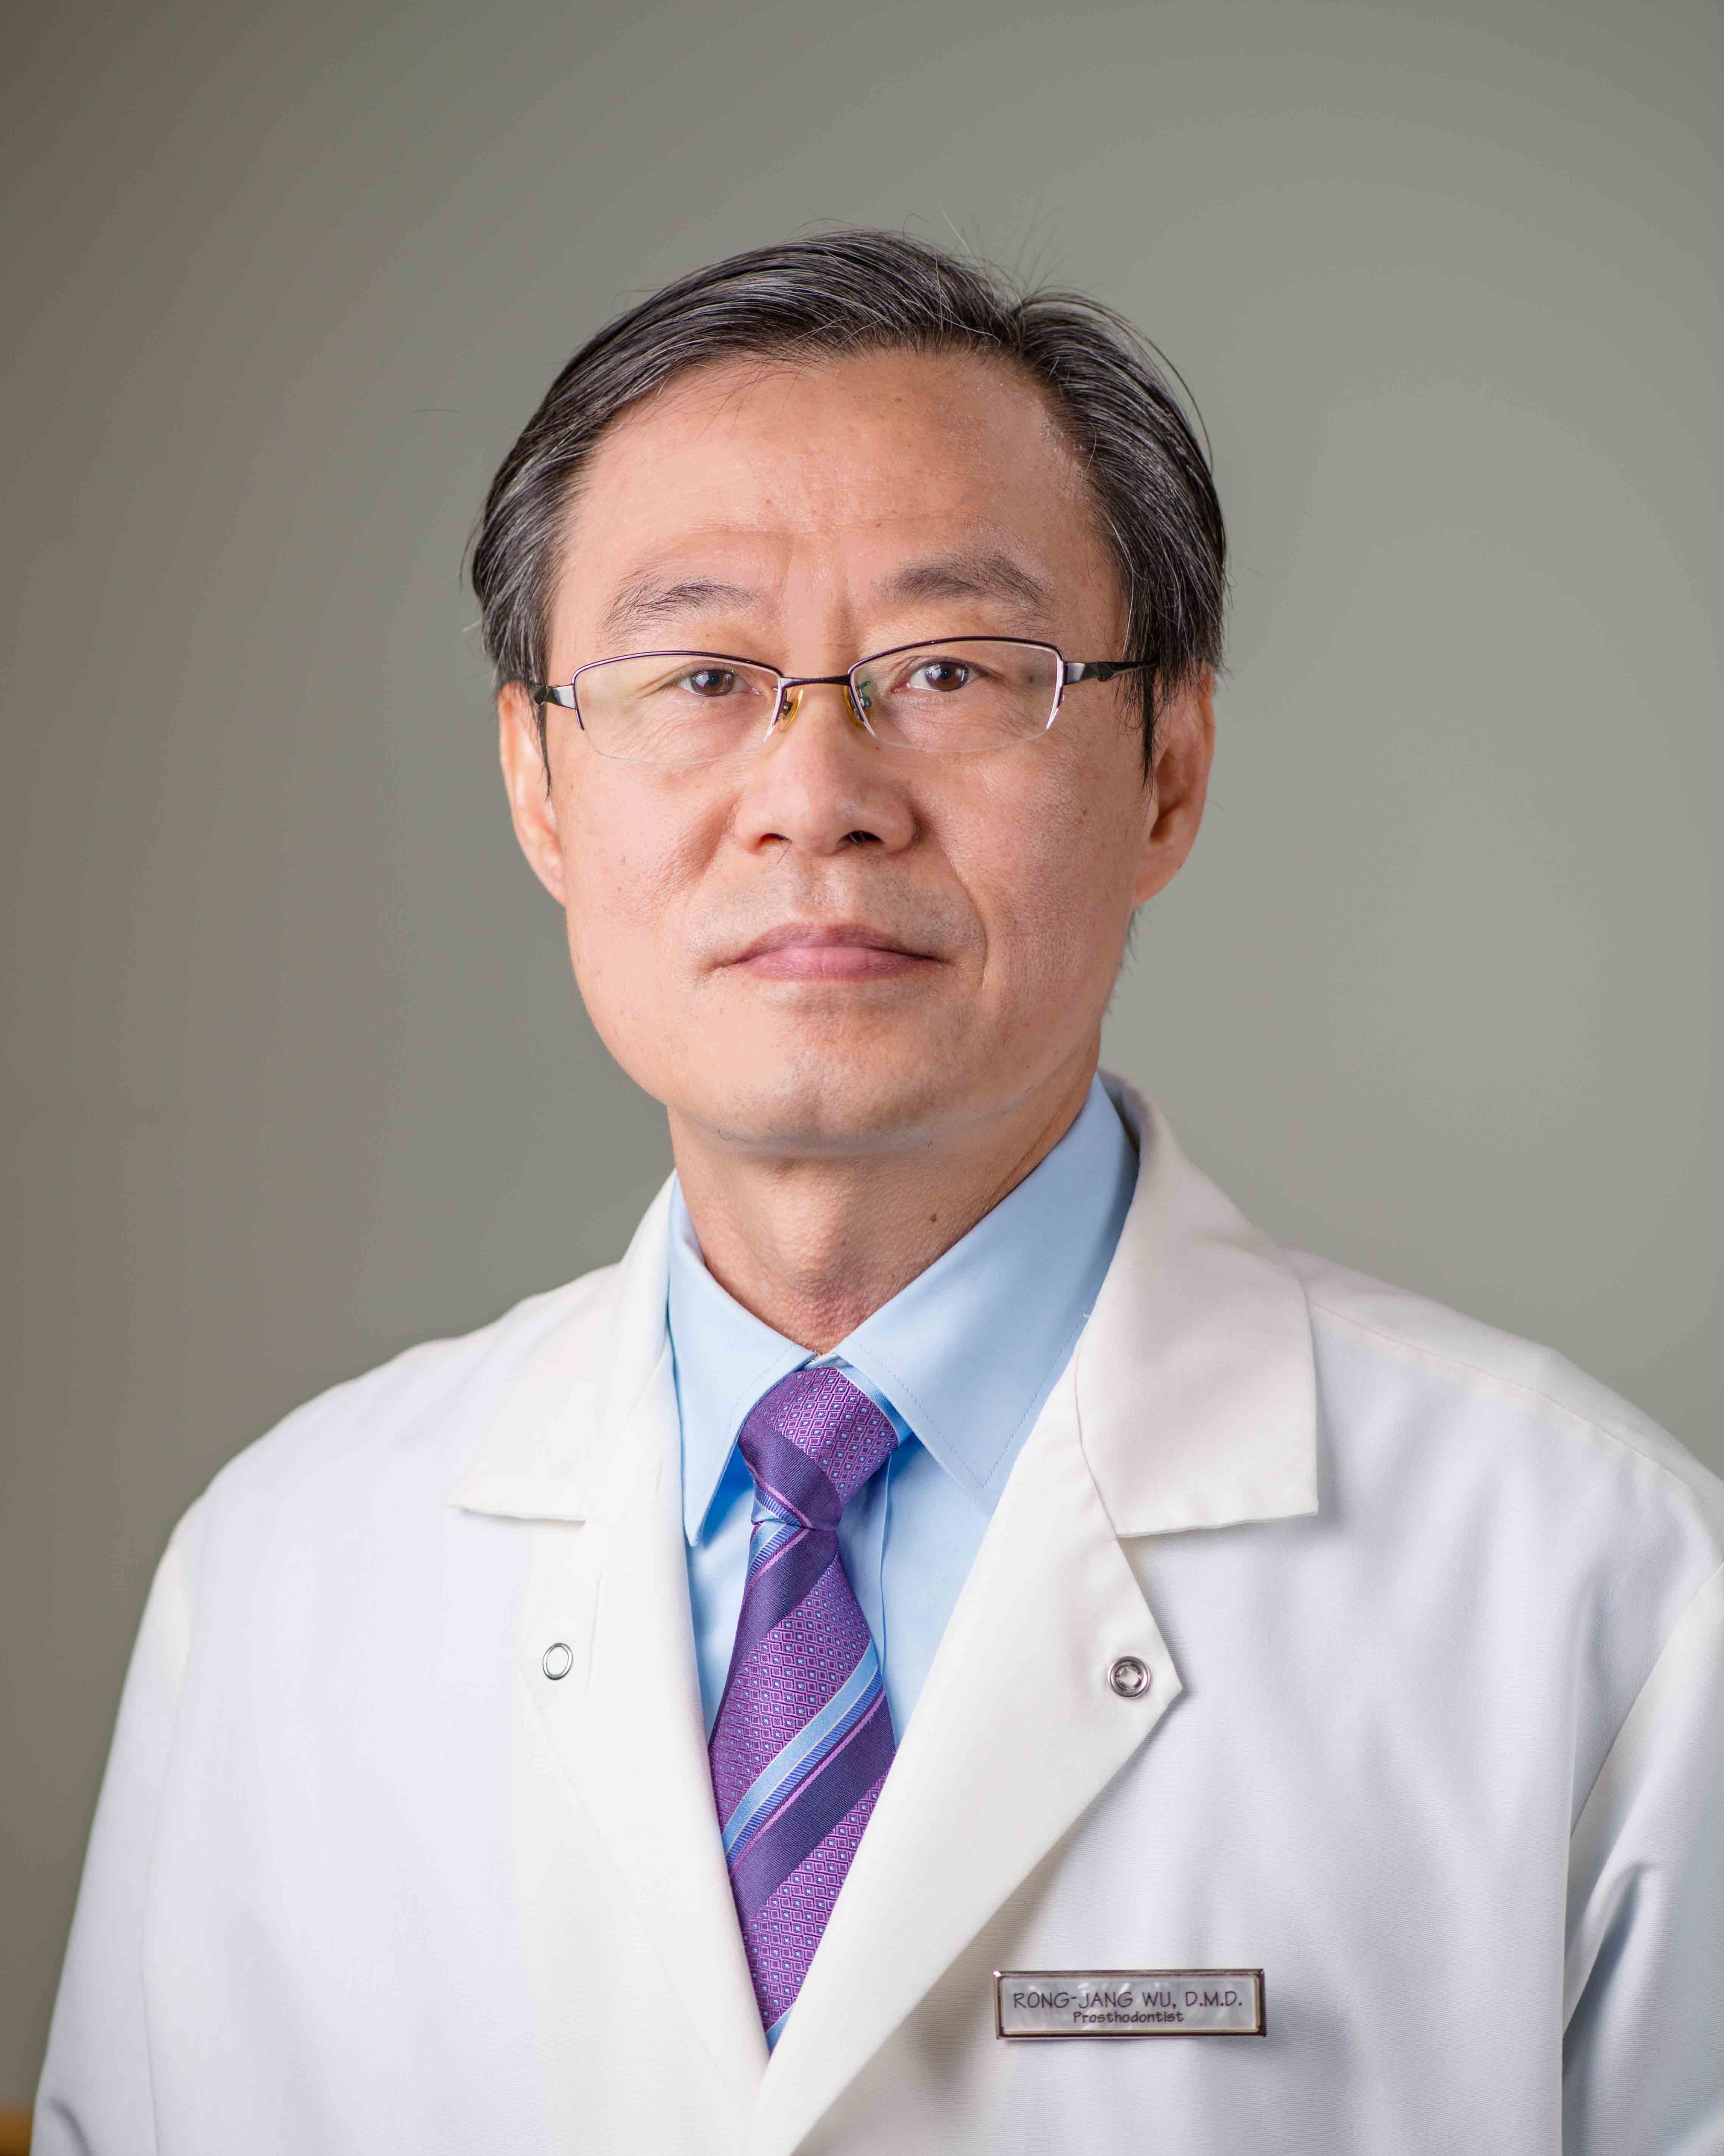 Dr. Rong Jang Wu